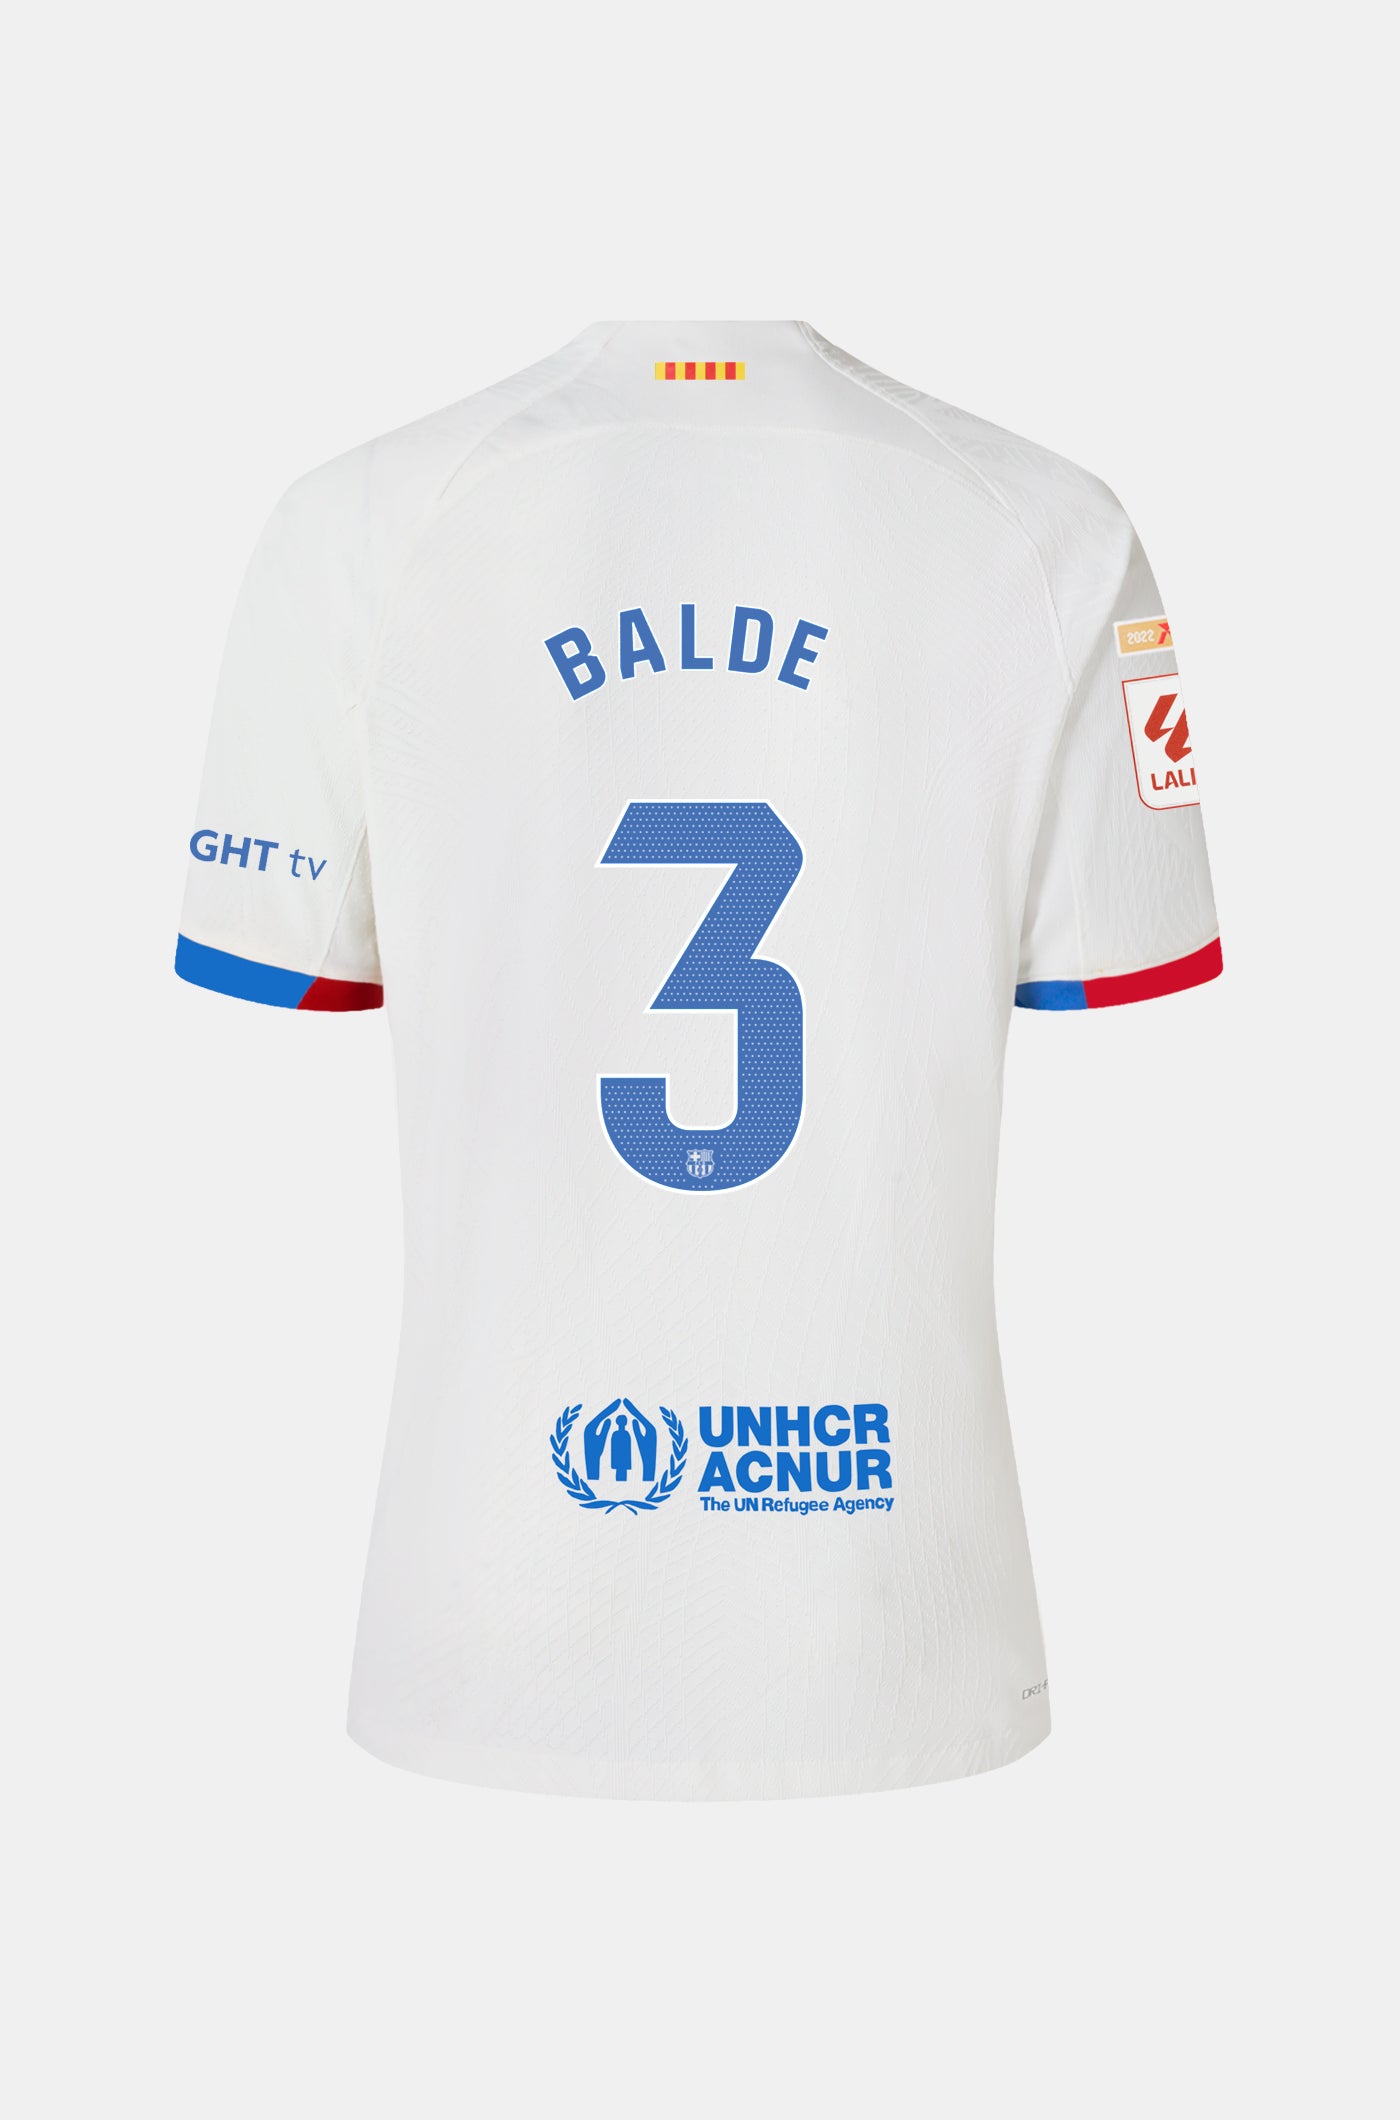 LFP FC Barcelona Away Shirt 23/24 Player’s Edition - Women - BALDE